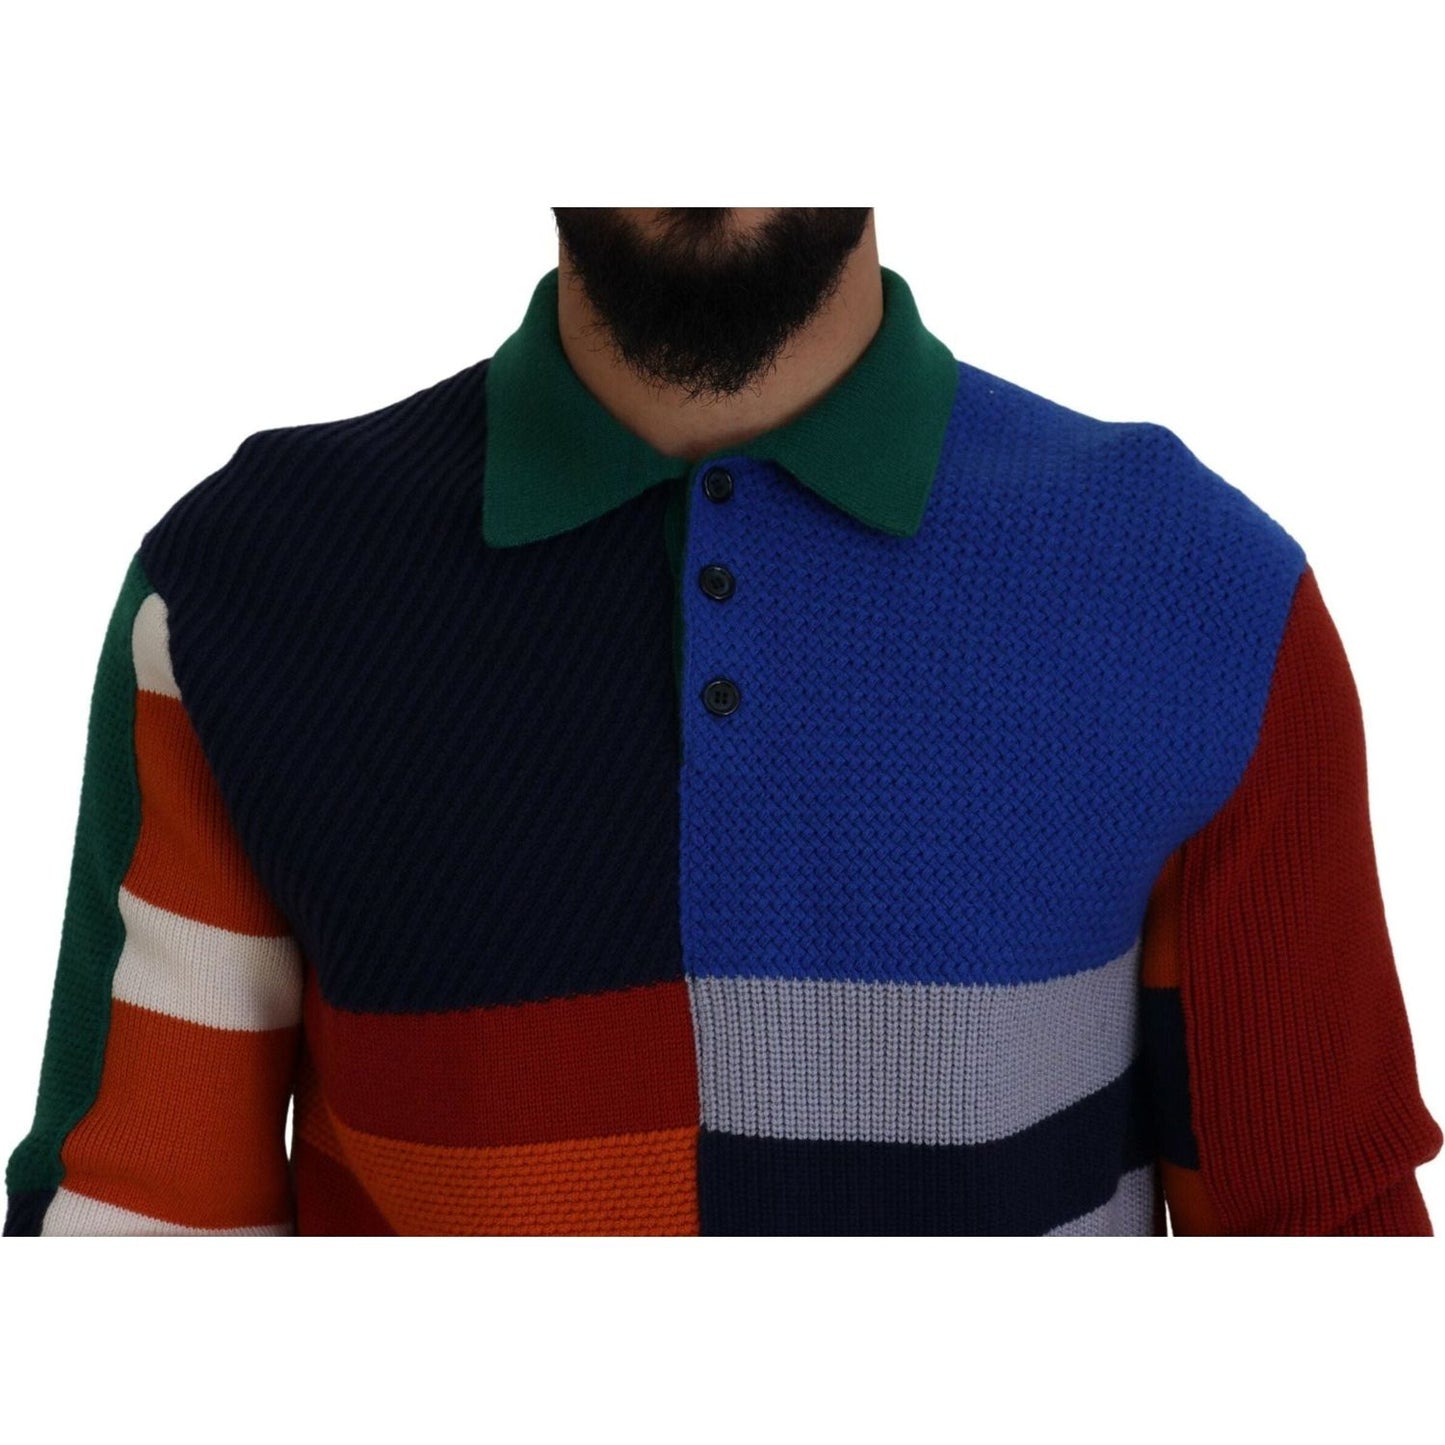 Dolce & Gabbana Pullover Sweater in Multicolor Stripes multicolor-stripes-wool-pullover-sweater